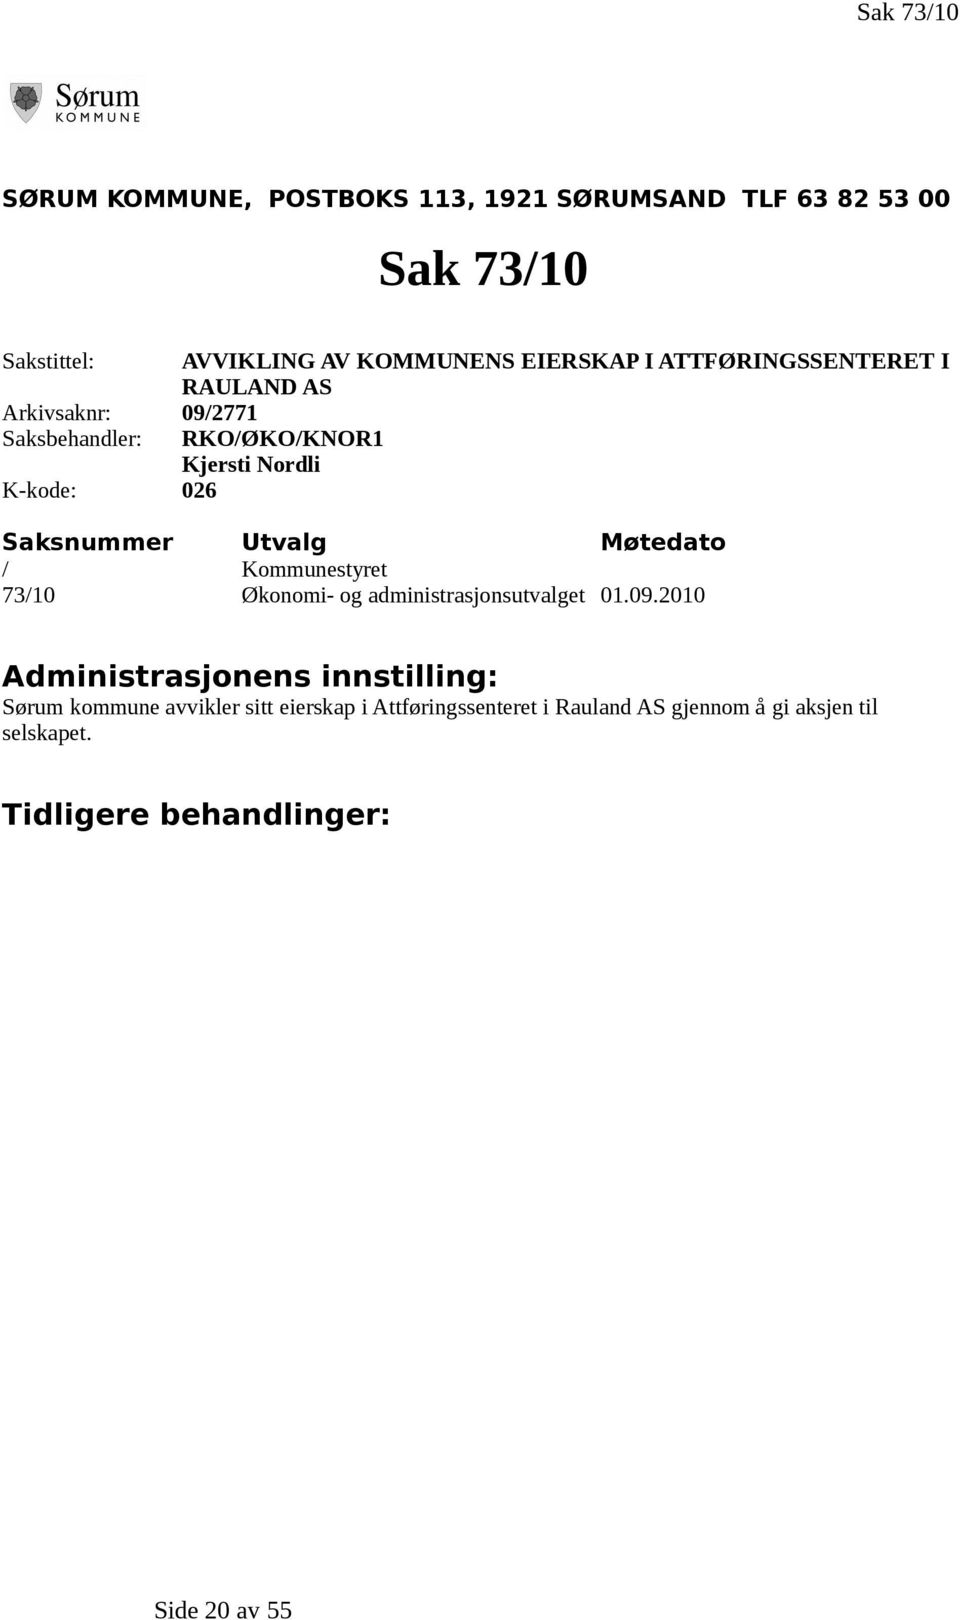 Saksnummer Utvalg Møtedato / Kommunestyret 73/10 Økonomi- og administrasjonsutvalget 01.09.